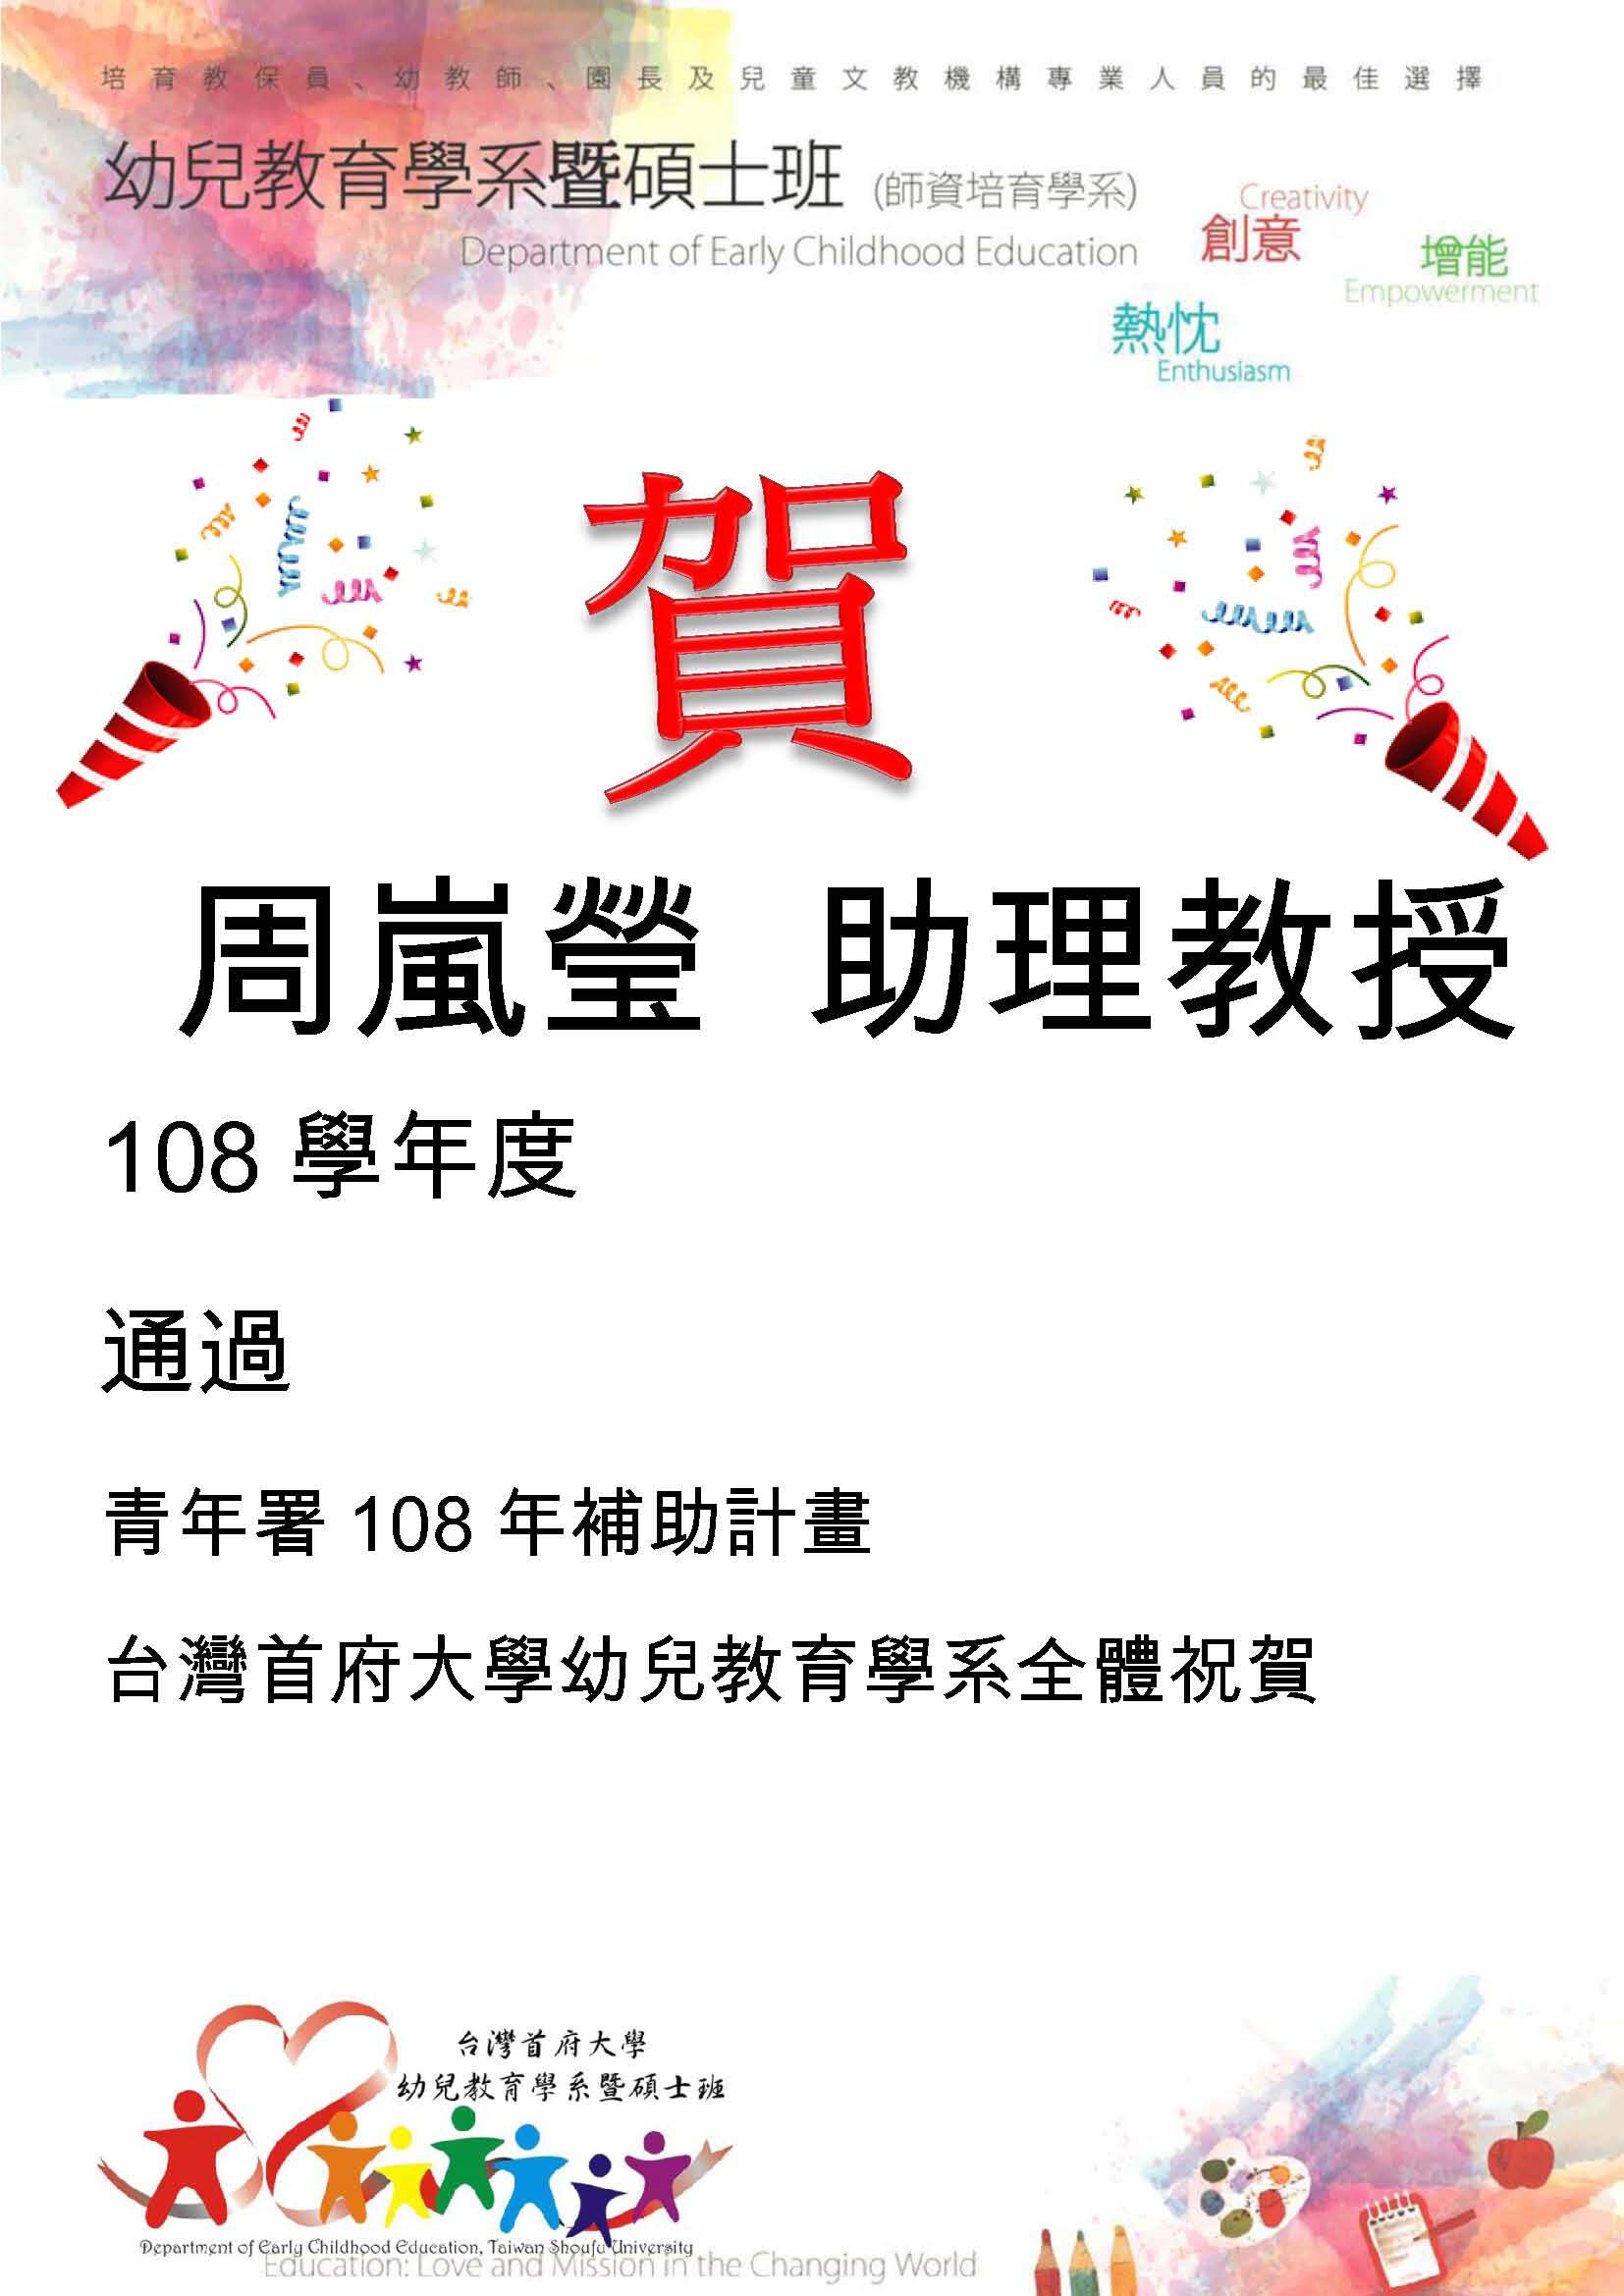 狂賀周嵐瑩助理教授 通過 「青年署108年補助計畫」